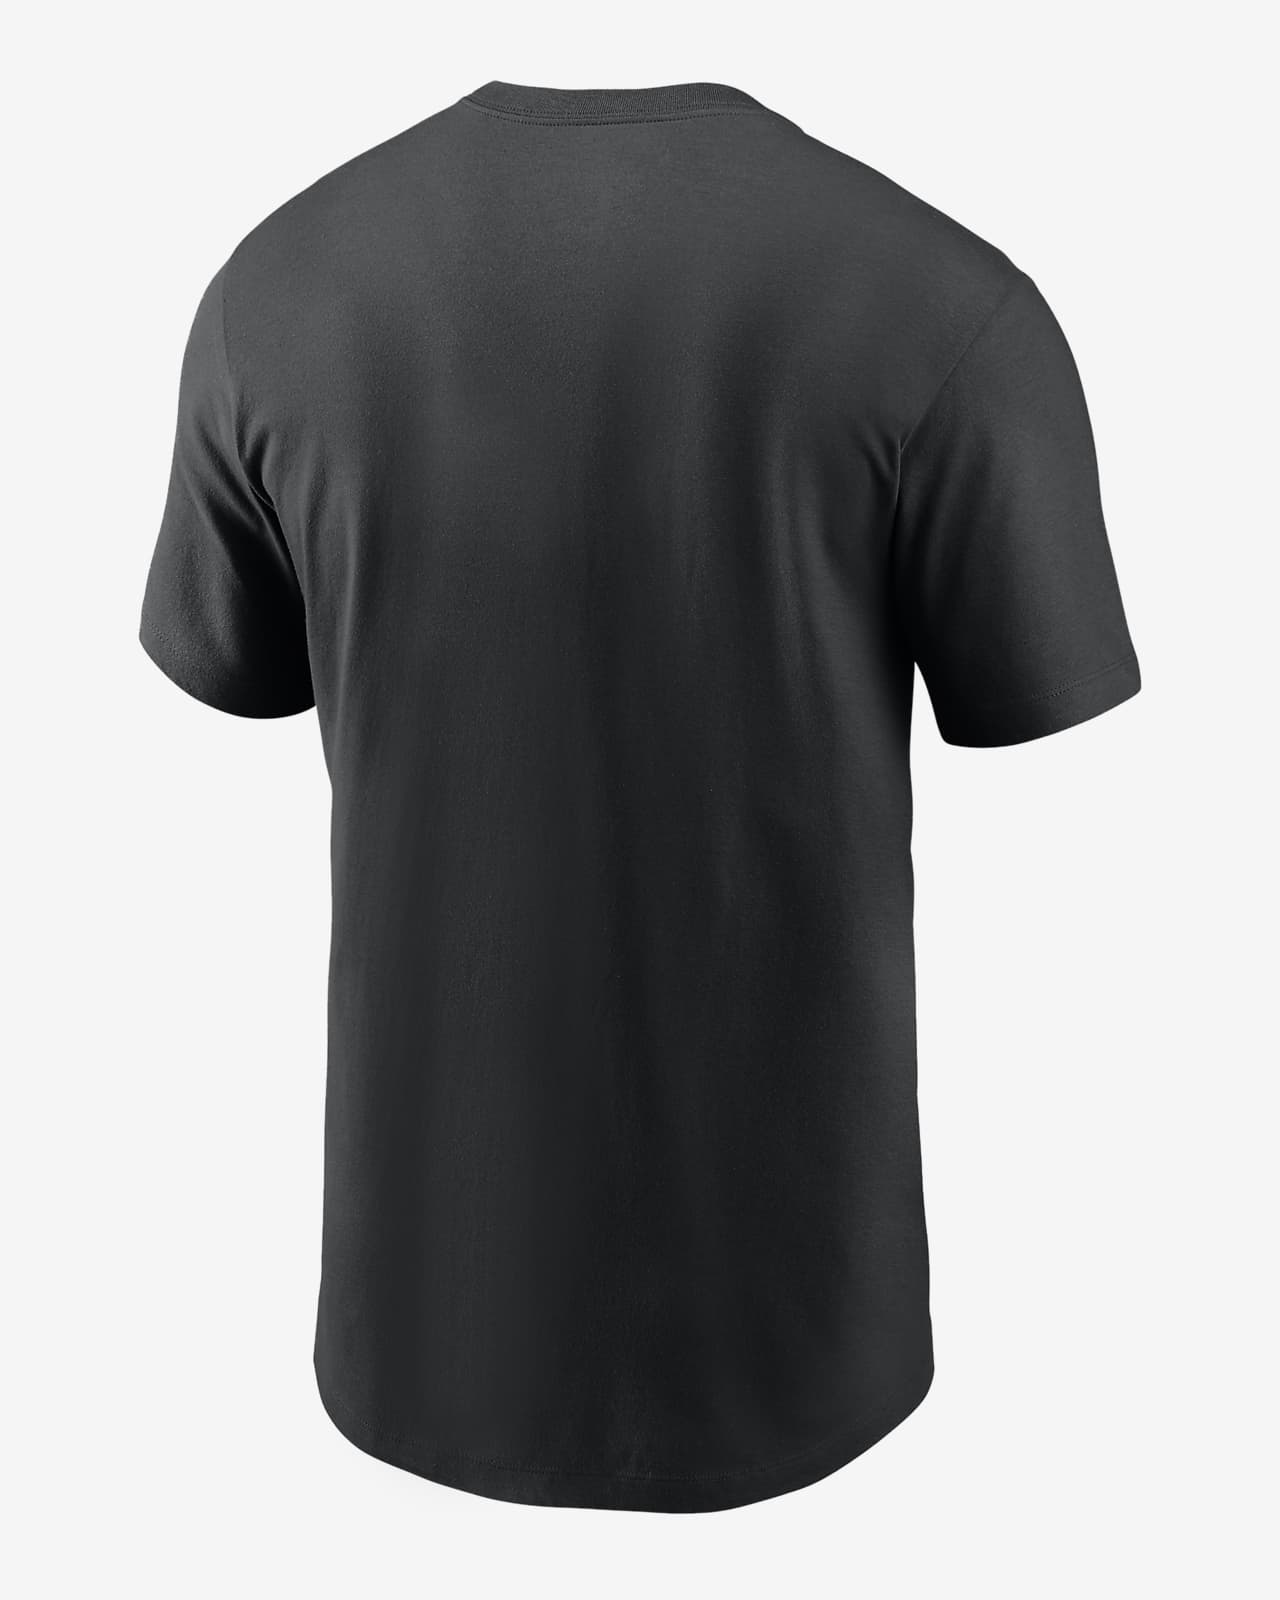 Pittsburgh Pirates Cooperstown Logo Men's Nike MLB T-Shirt